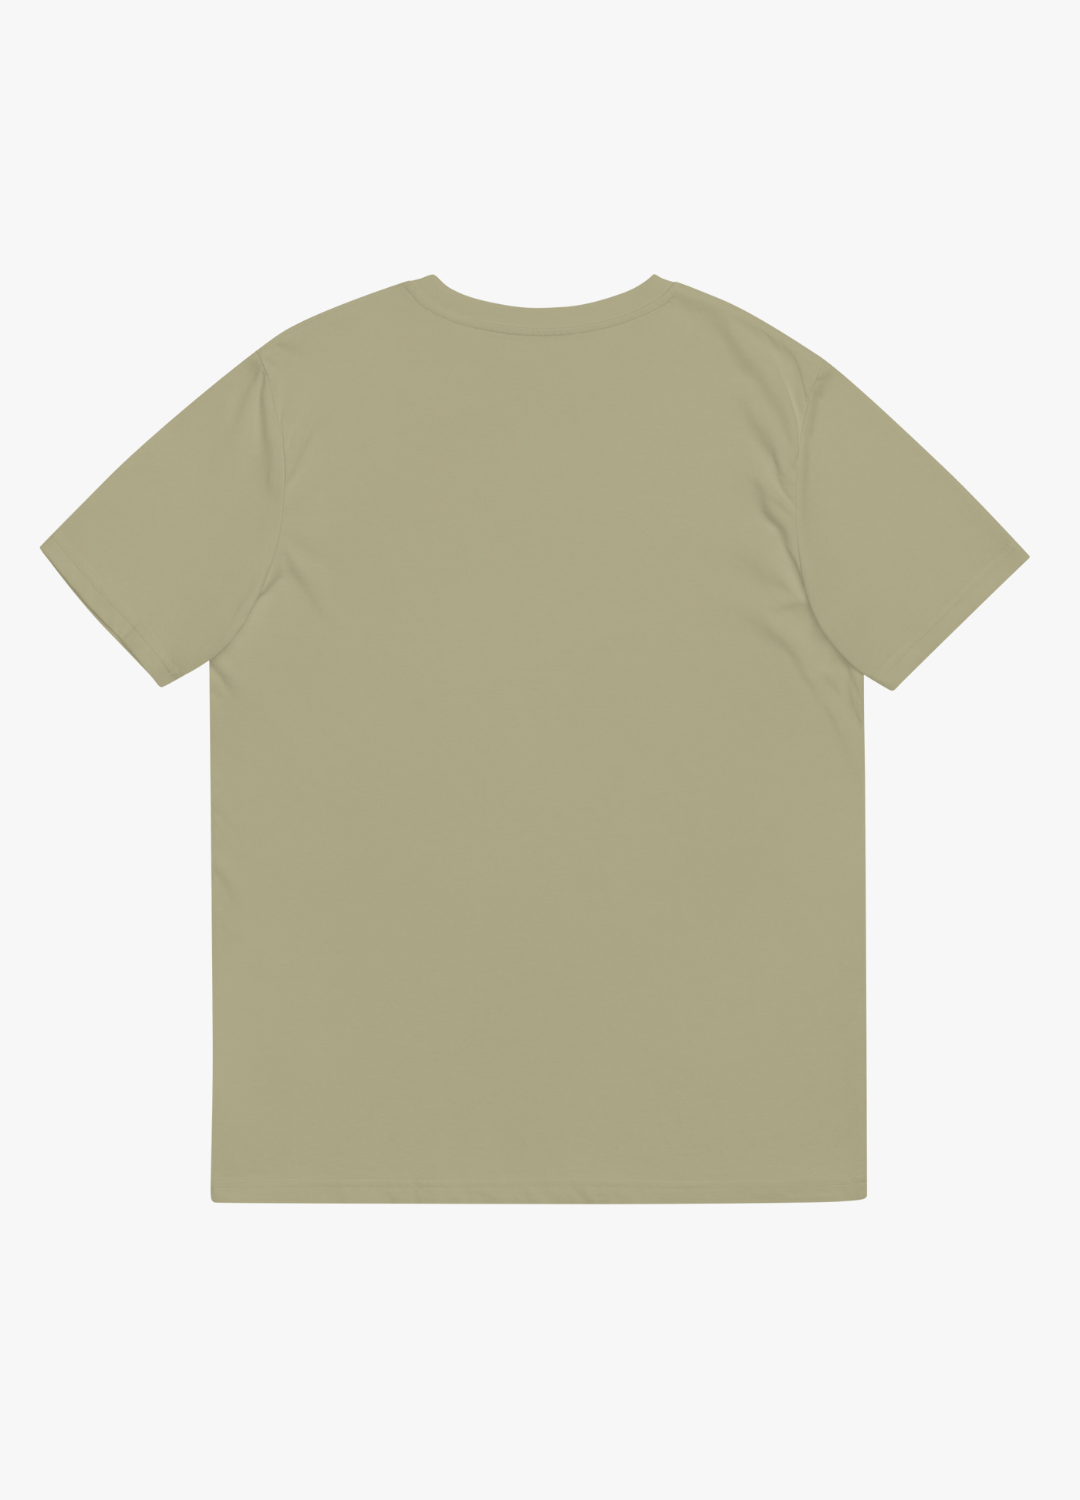 tshirt unisexe 100% coton vert sauge léger et doux manche courte avec design drôle décalé jeu de mot